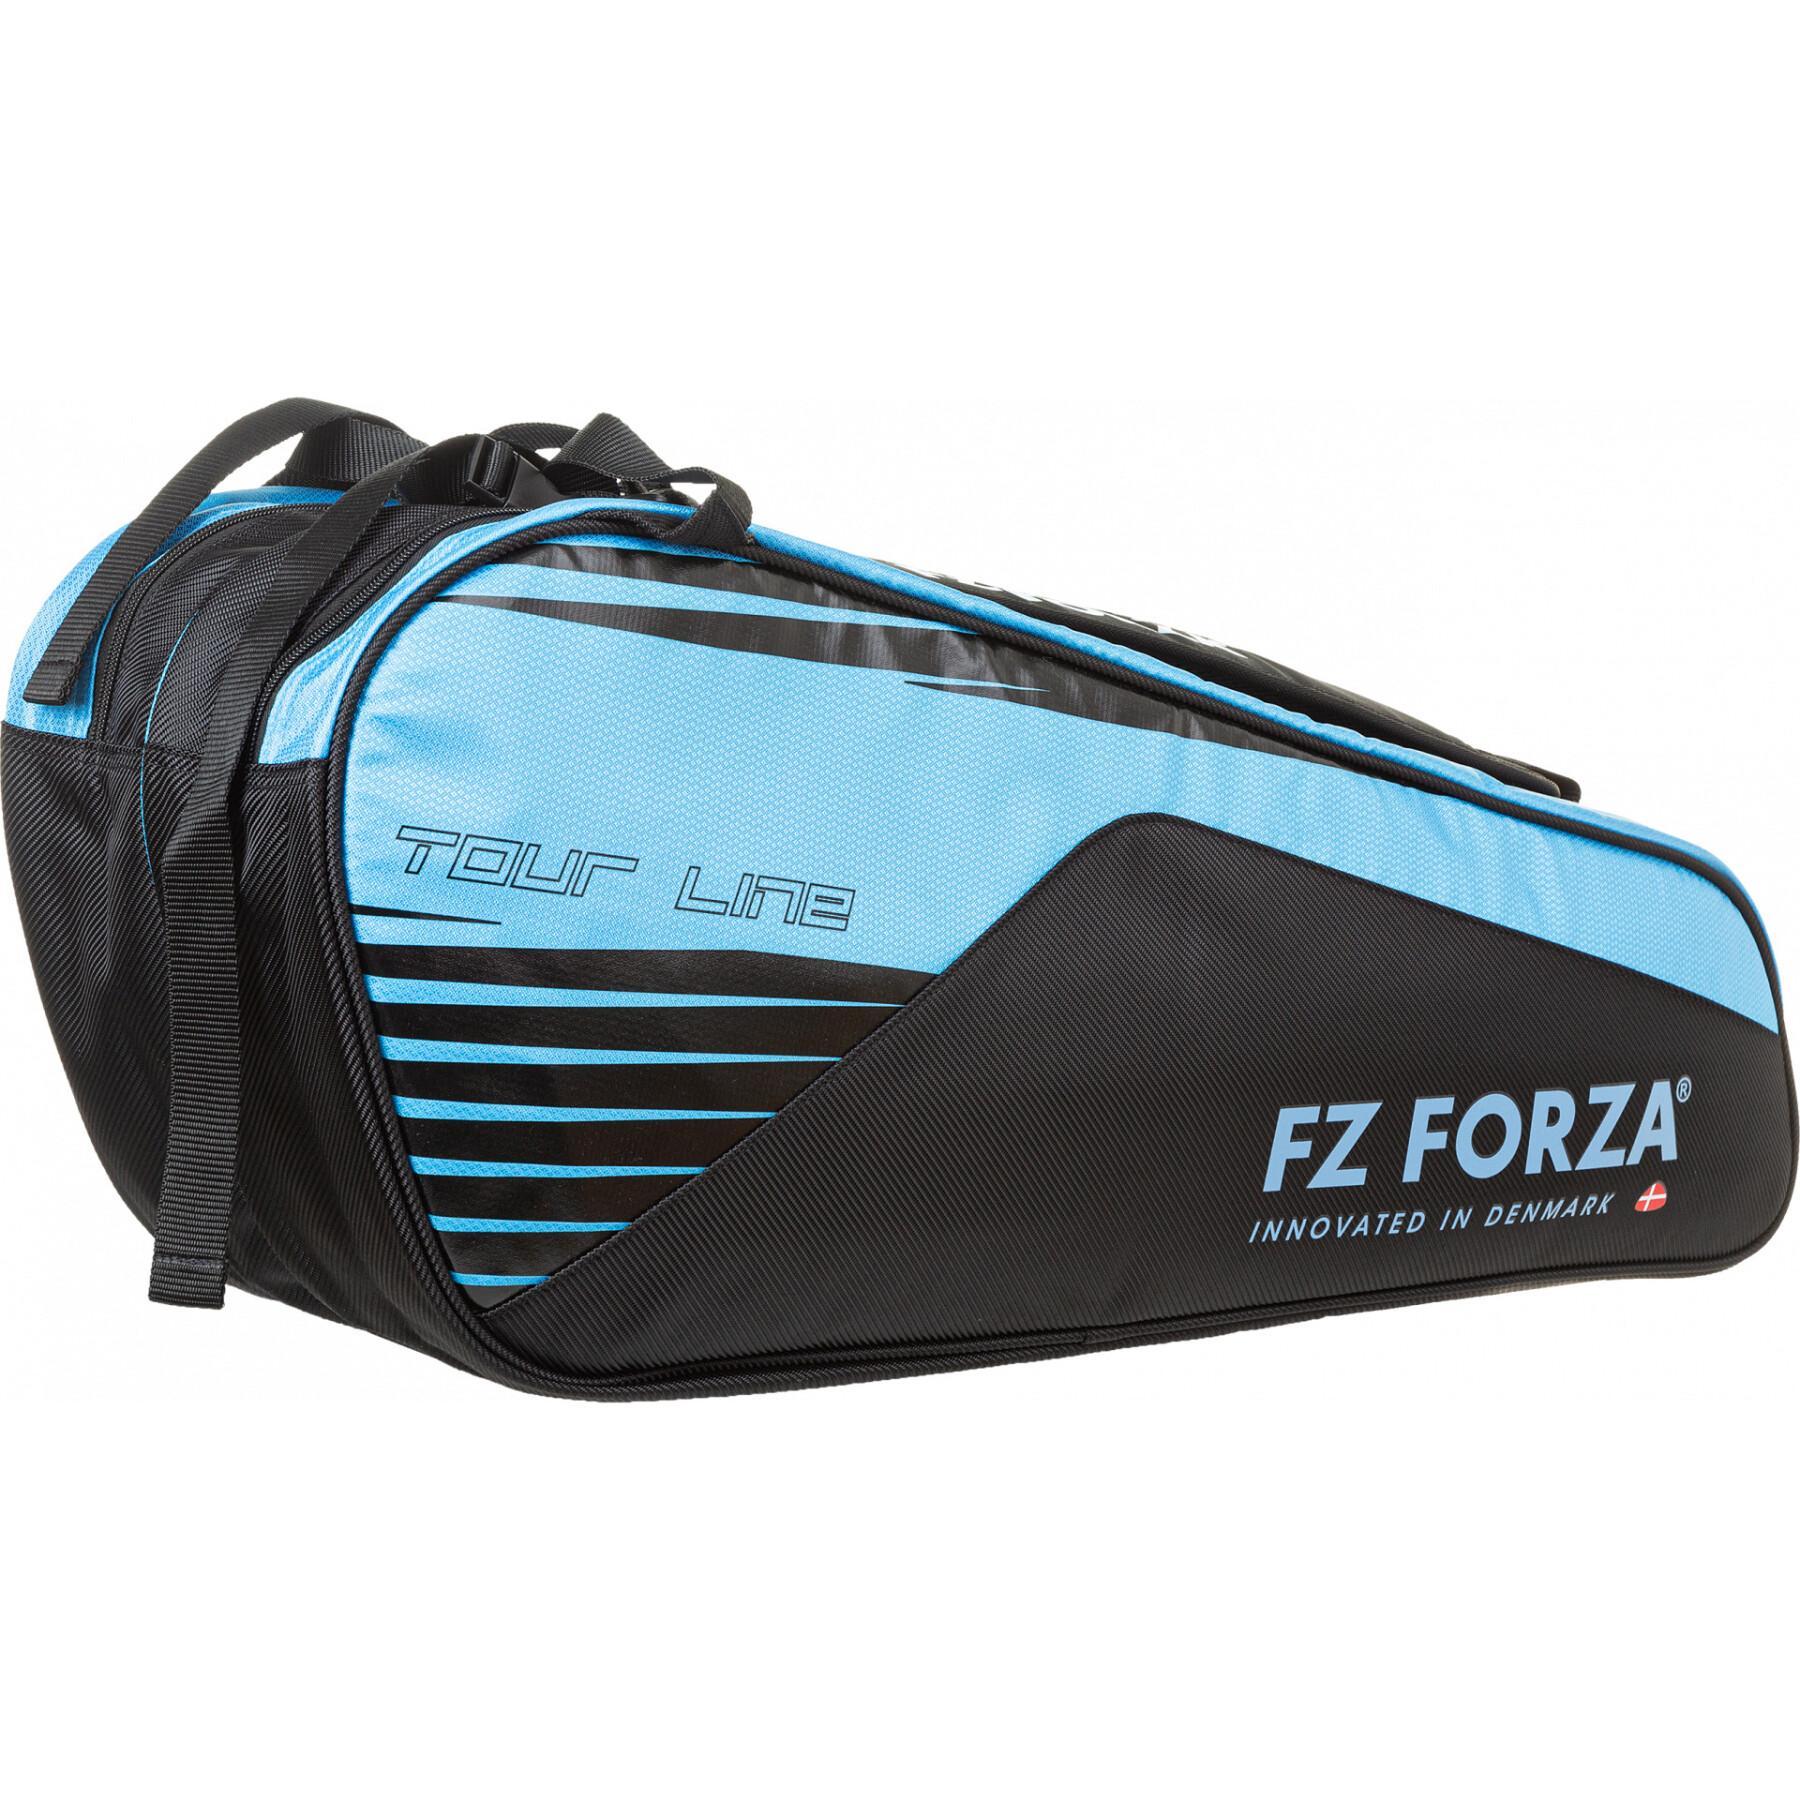 Väska för 6 badmintonracketar FZ Forza